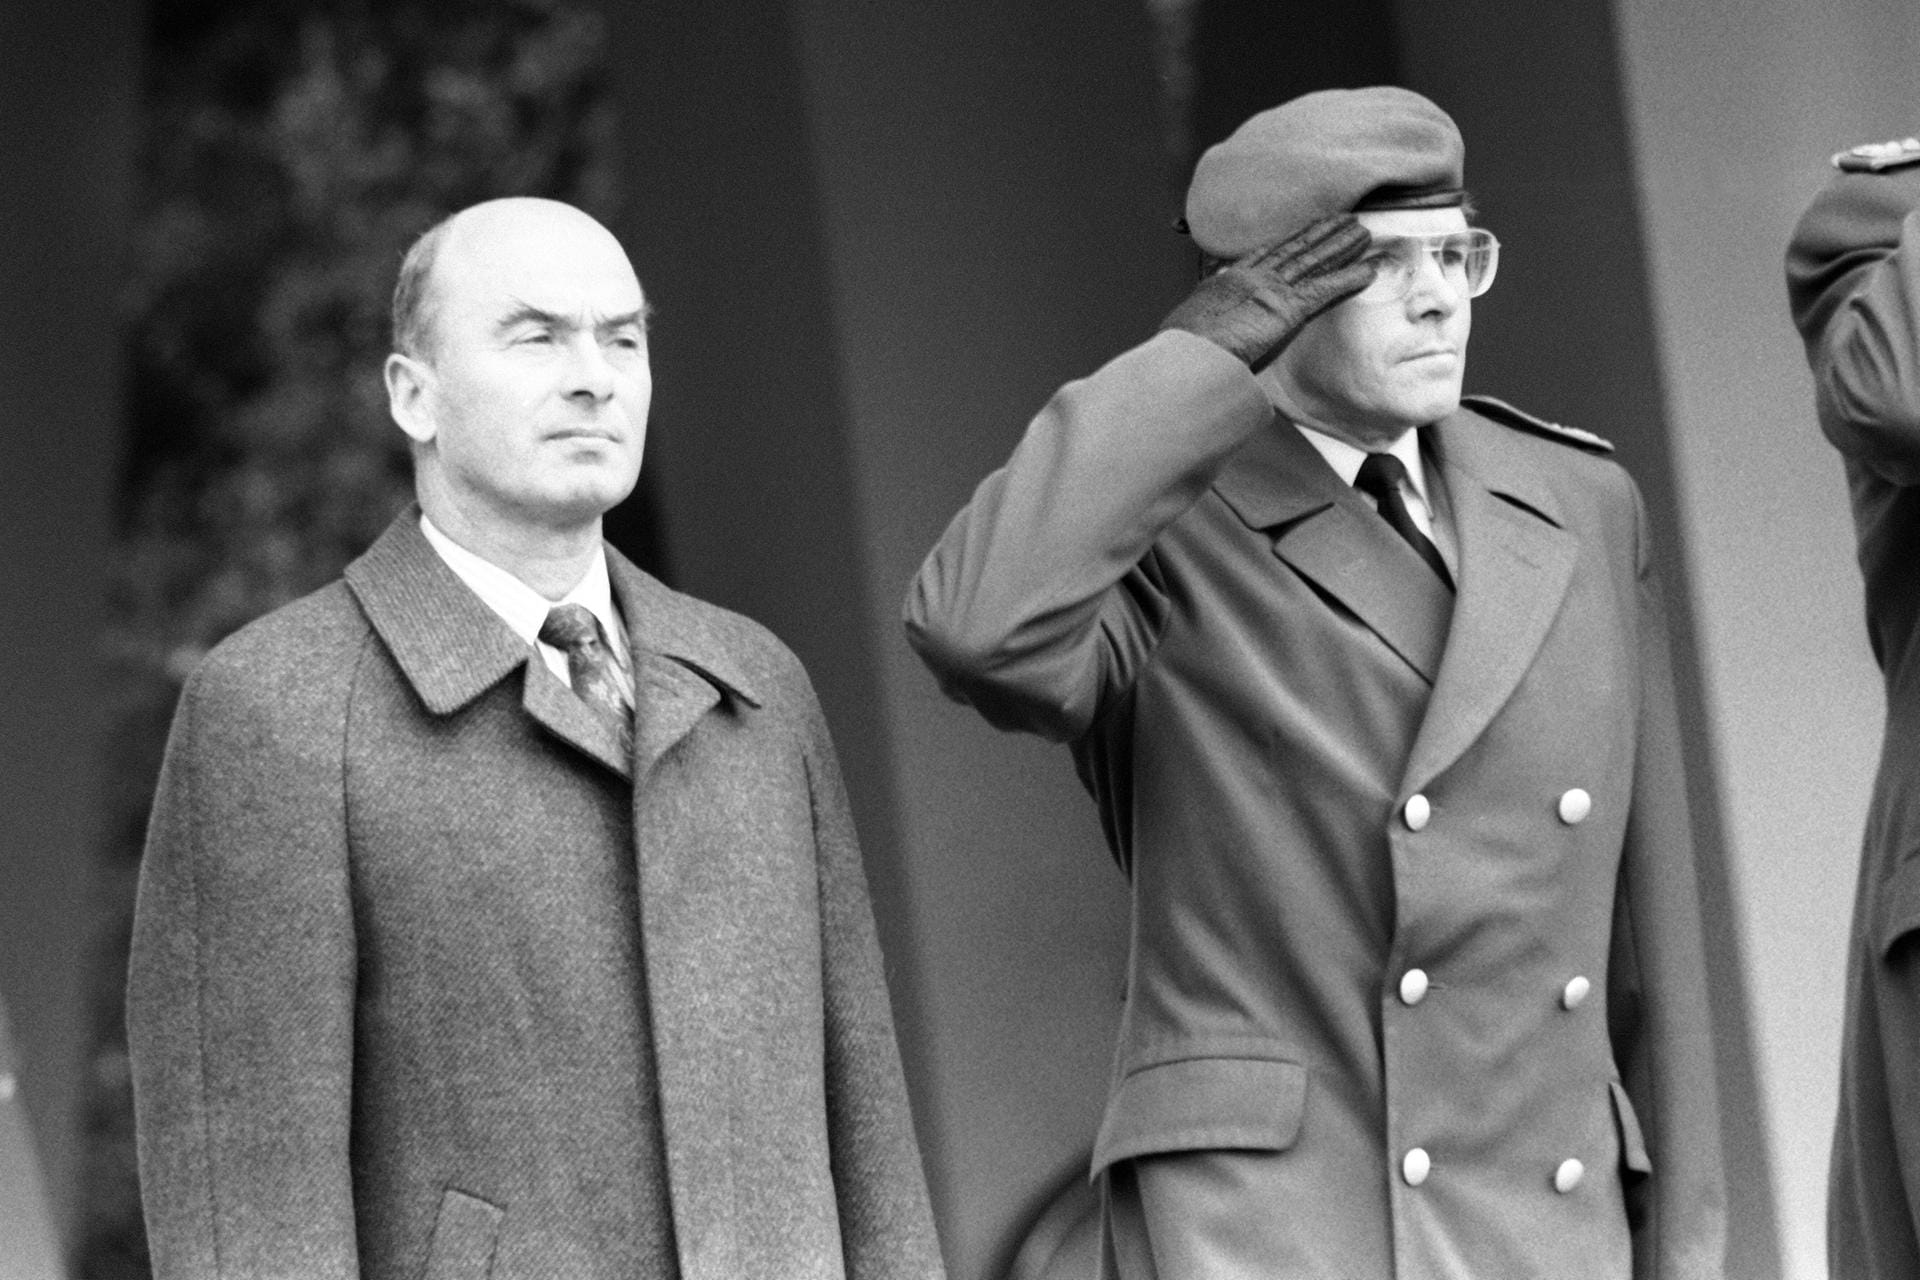 Dezember 1992: Im gleichen Jahr wurde Schönbohm Staatssekretär für Sicherheitspolitik, Rüstung und Bundeswehrplanung. Hier ist er neben General Klaus Naumann zu sehen.